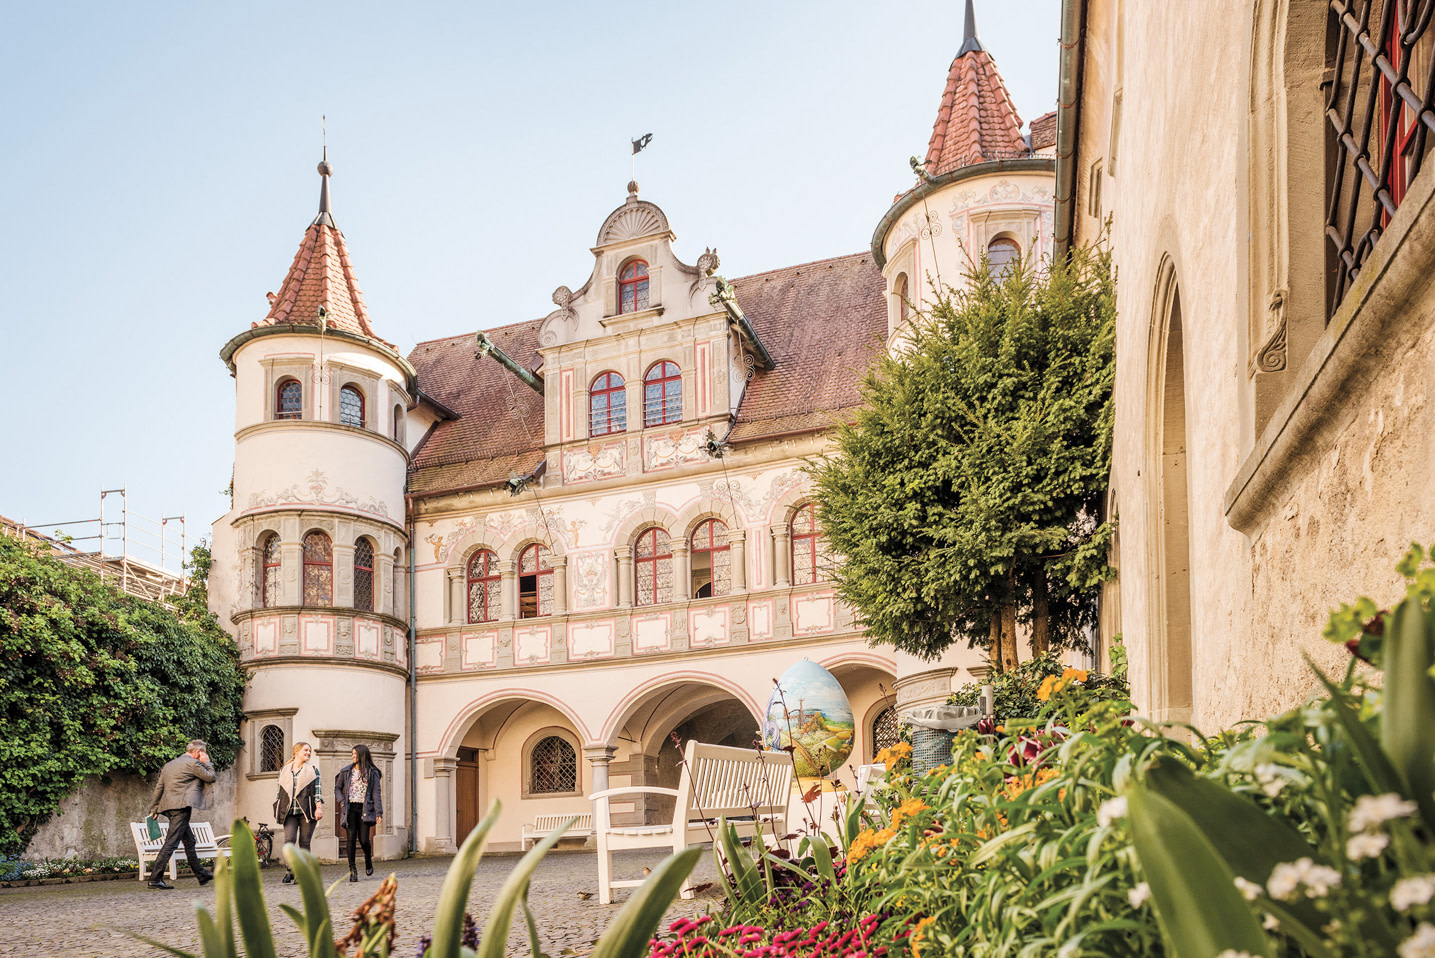 Reisen kennt kein Alter Bodensee Reiseführer für Senioren: Blick auf das Rathaus von Konstanz